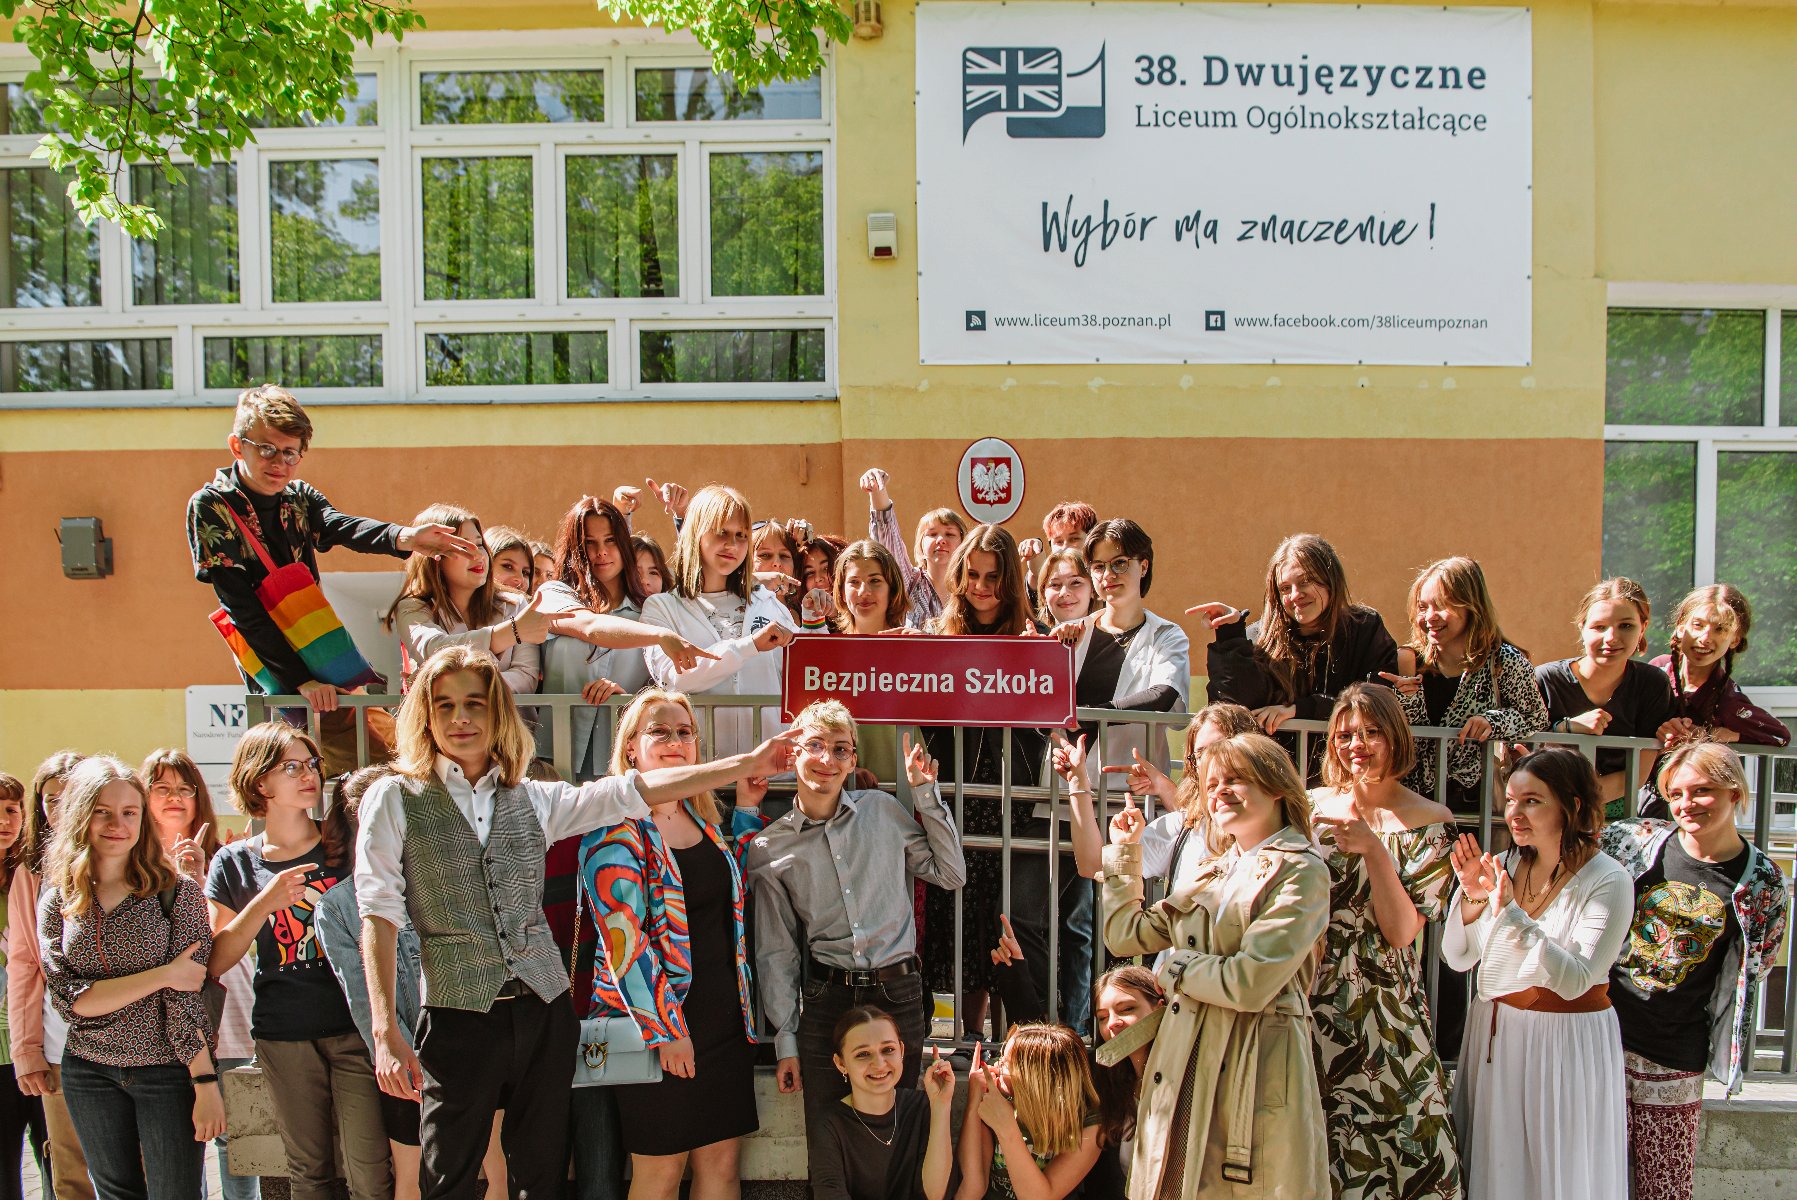 Grupowe zdjęcie uczniów i nauczycieli przed szkołą, pozujących z tabliczką z napisem "Bezpieczna szkoła". - grafika artykułu